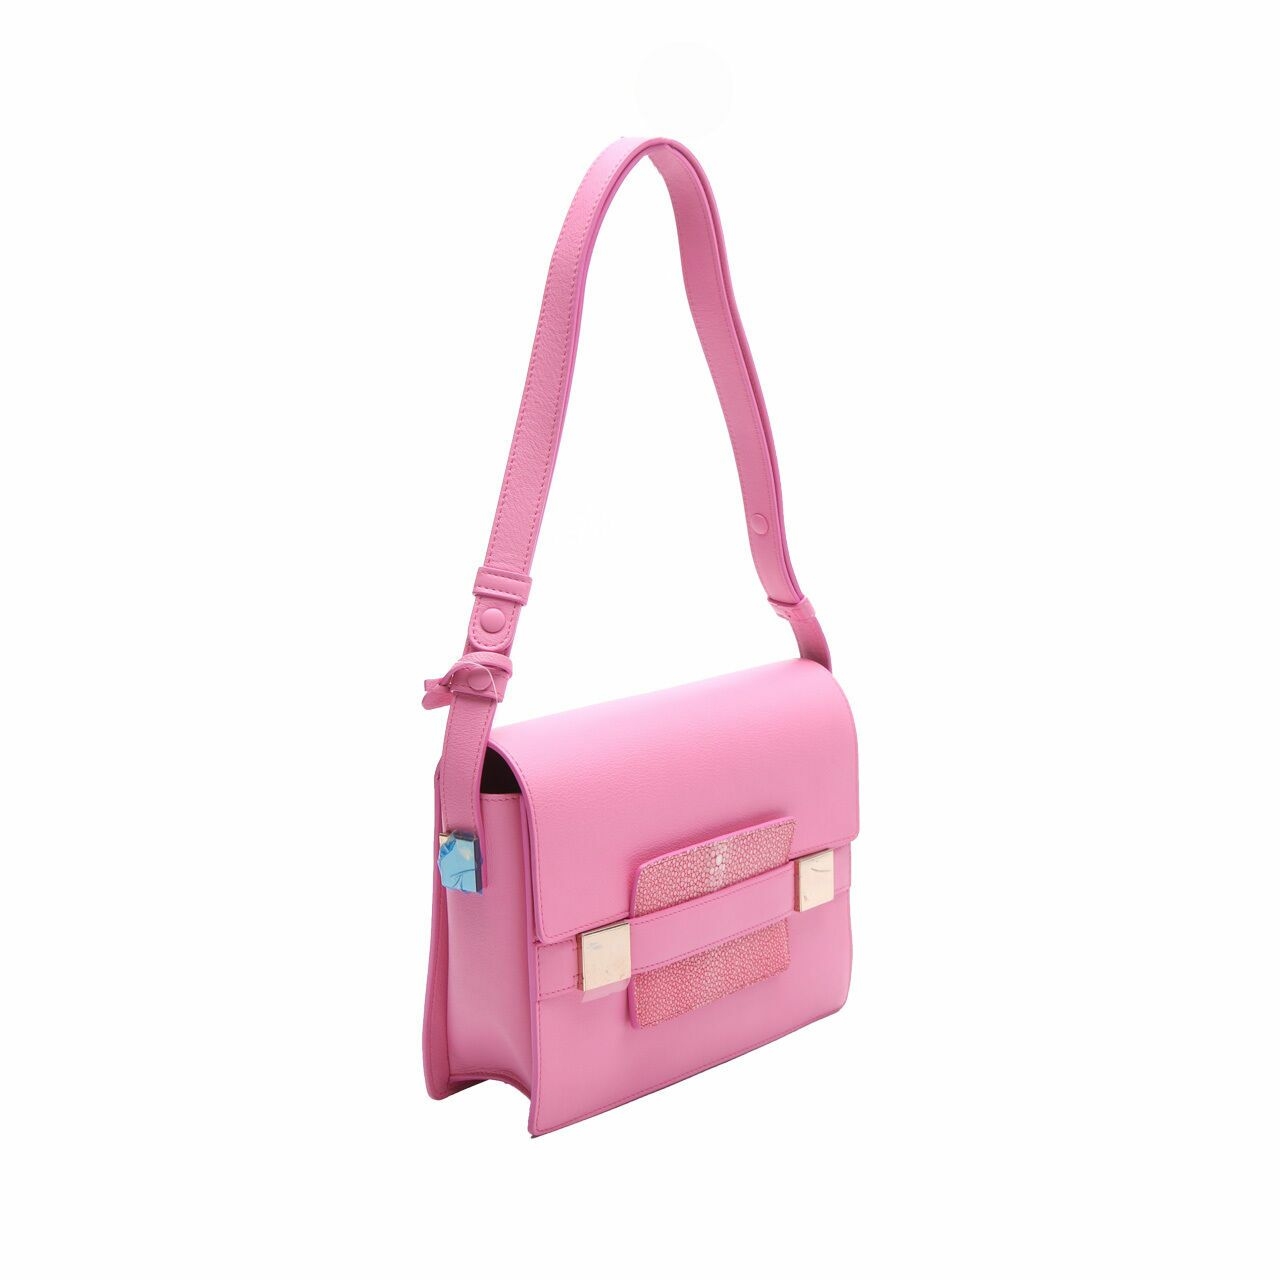 Delvaux Madam Shoulder Bag pink leather Sling Bag